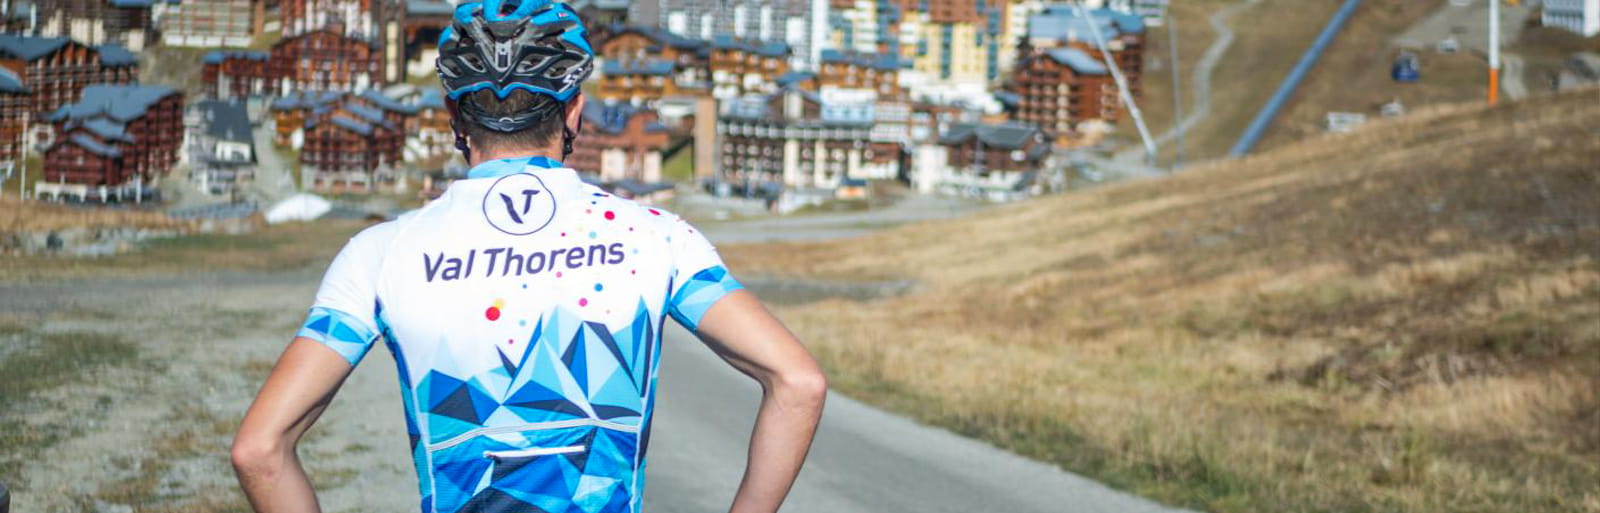 Agenda cyclistes de l’été 2021 en Savoie